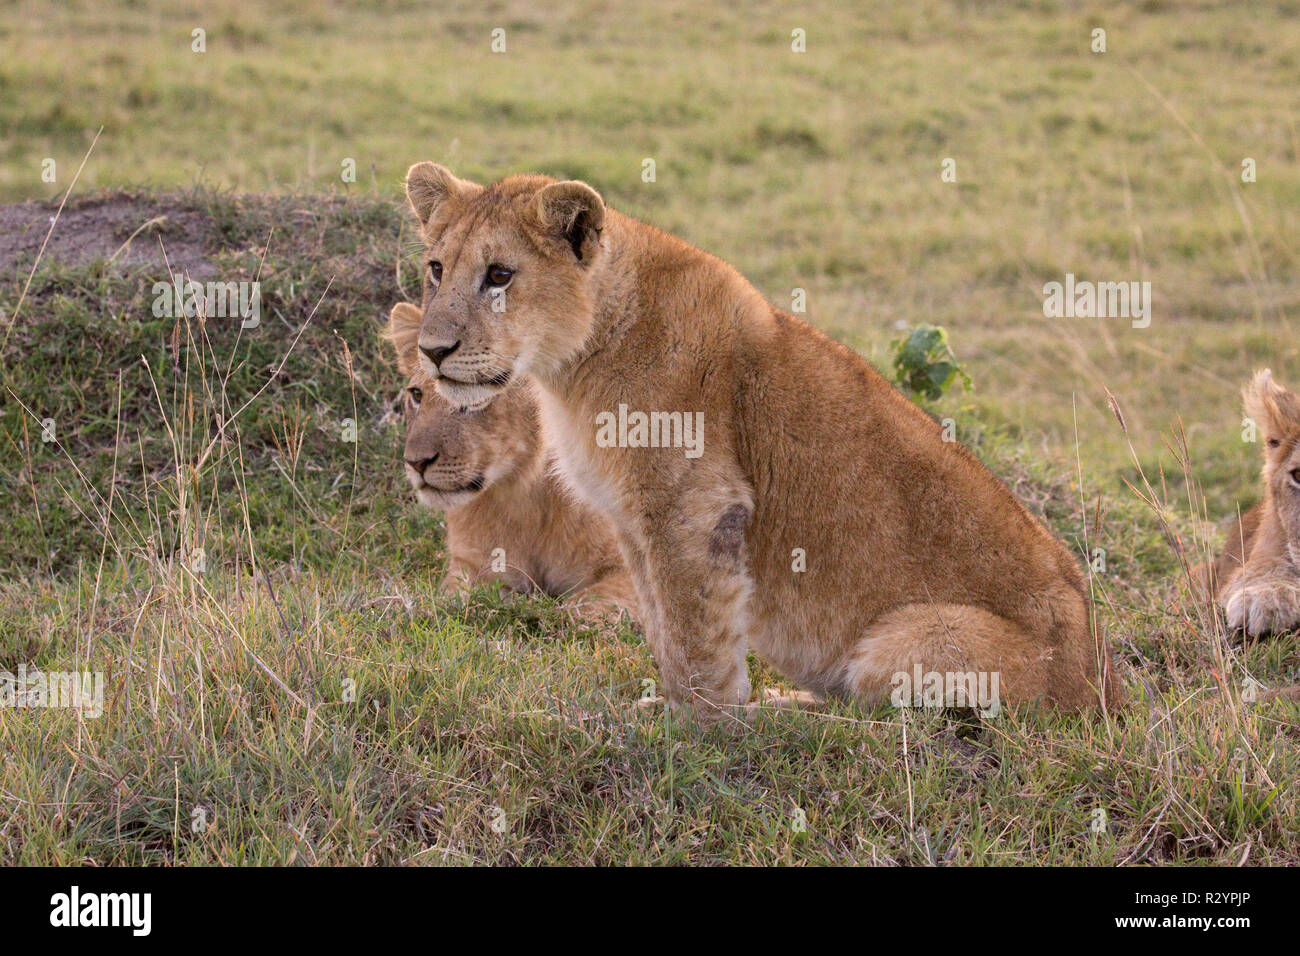 Deux des lionceaux, Panthera leo, Masai Mara National Reserve, Kenya Banque D'Images